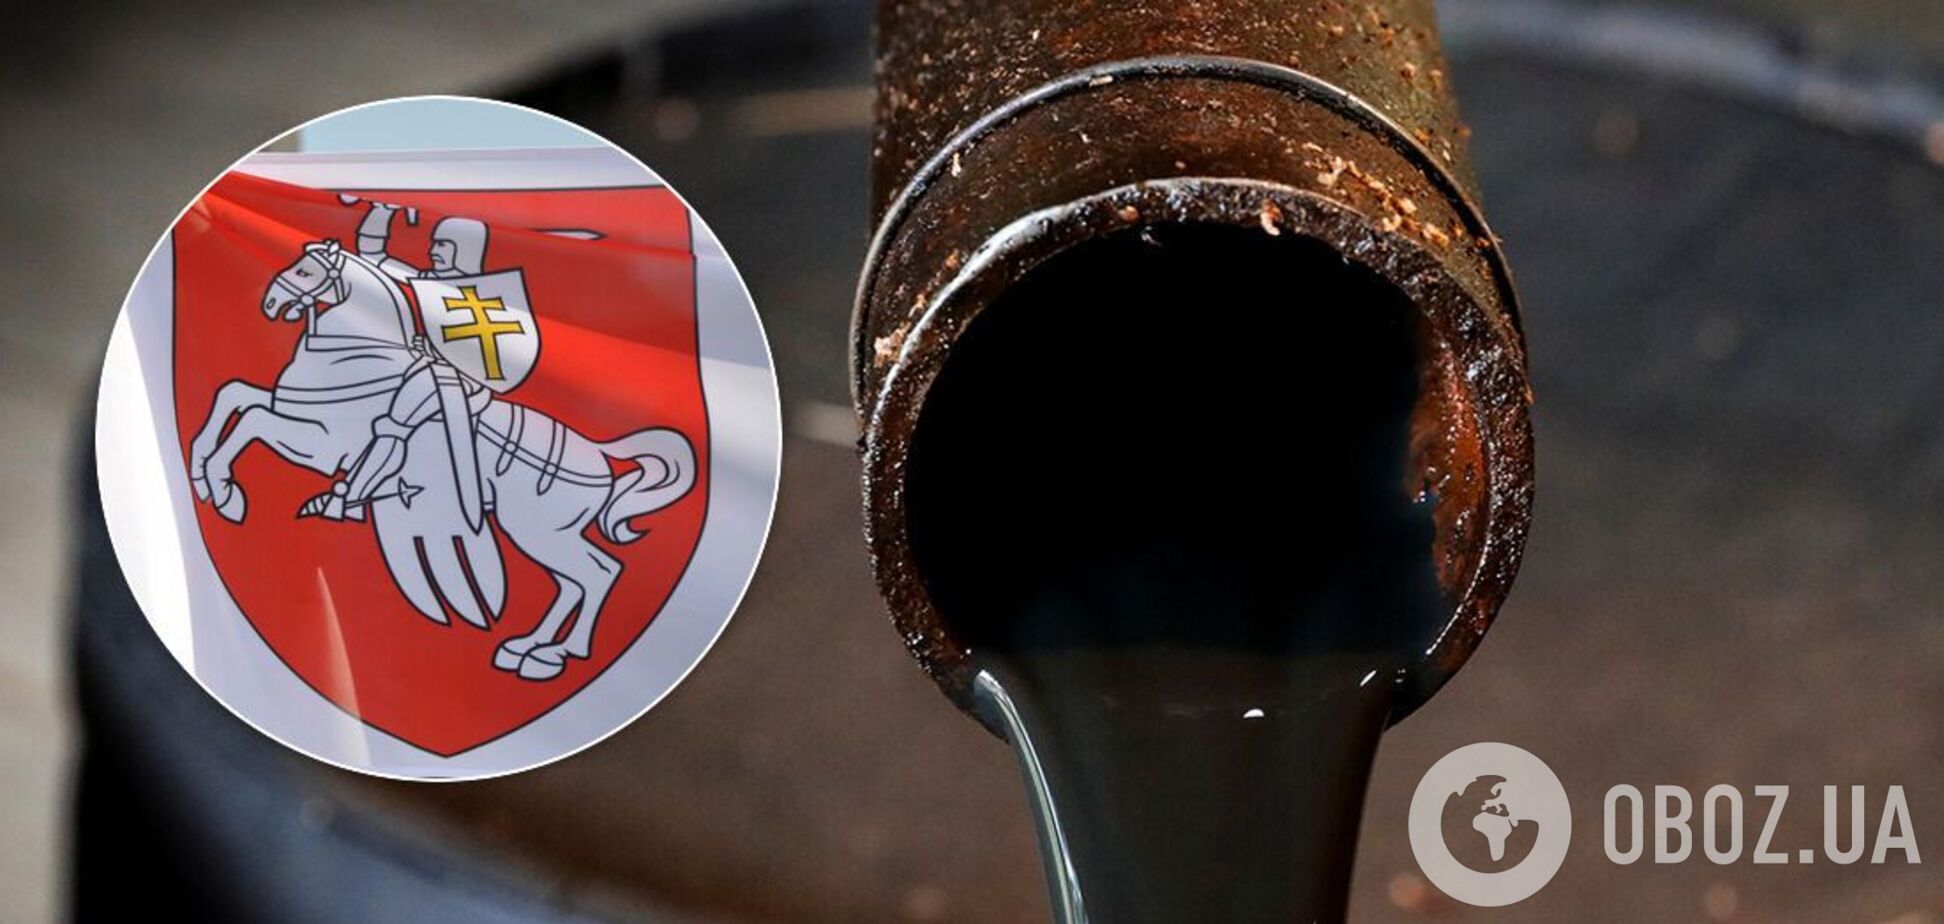 У Білорусі нафтозаводи через протести можуть скоротити виробництво бензину